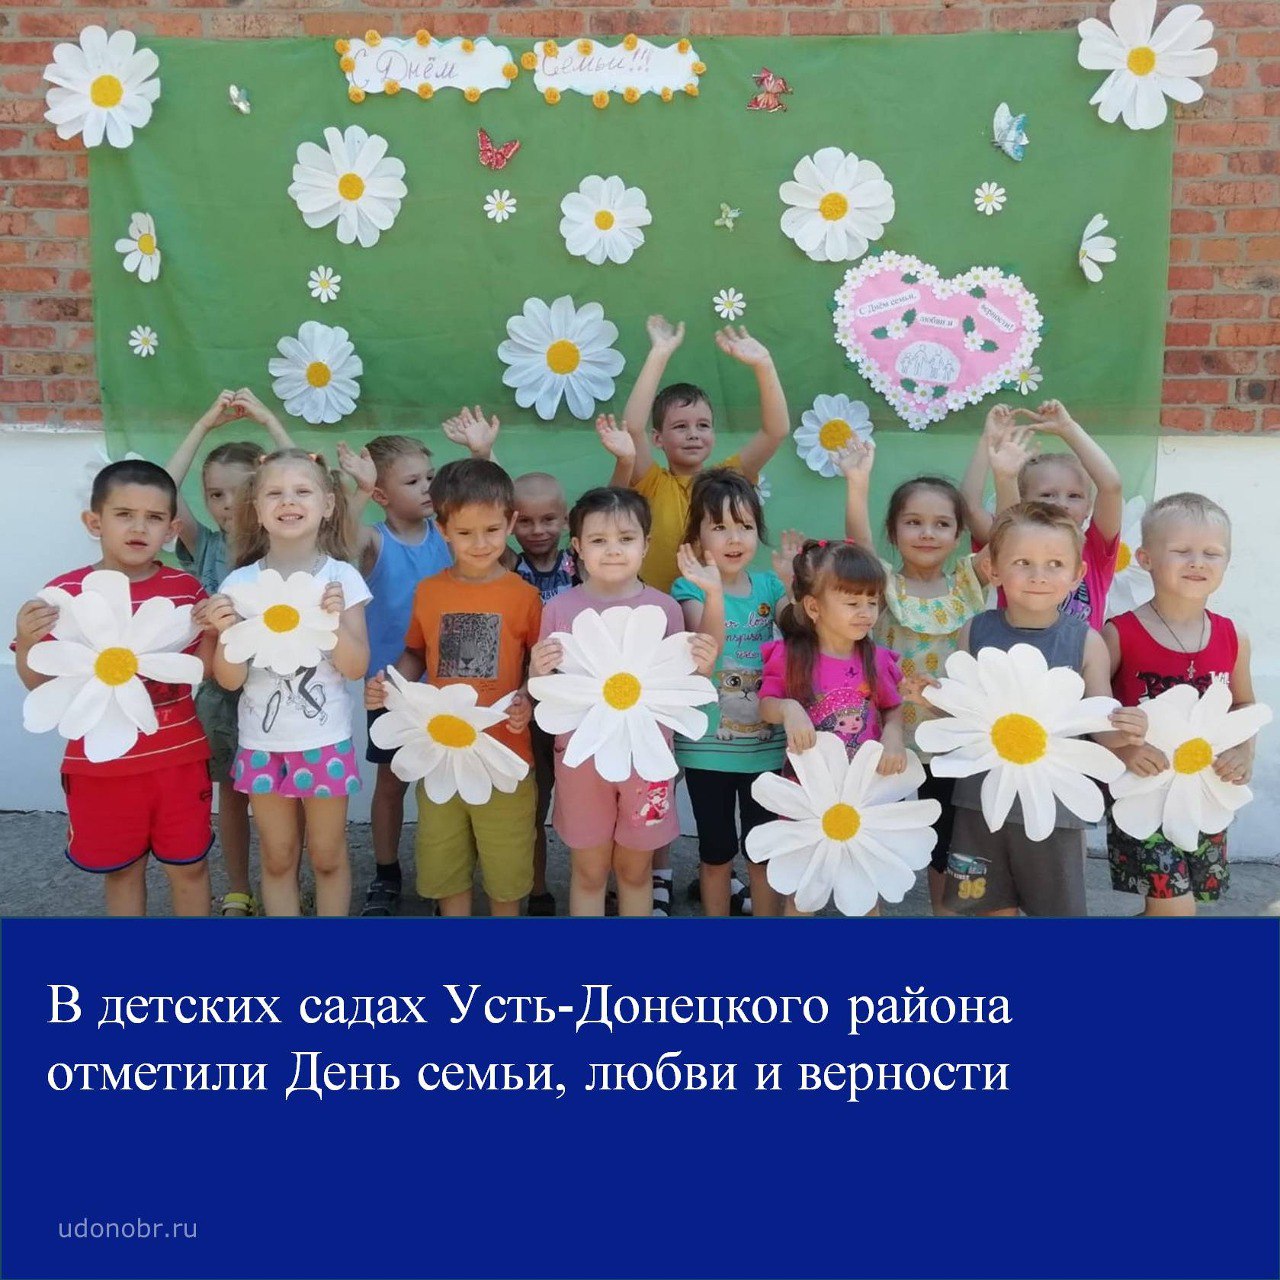 В детских садах Усть-Донецкого района отметили День семьи, любви и верности